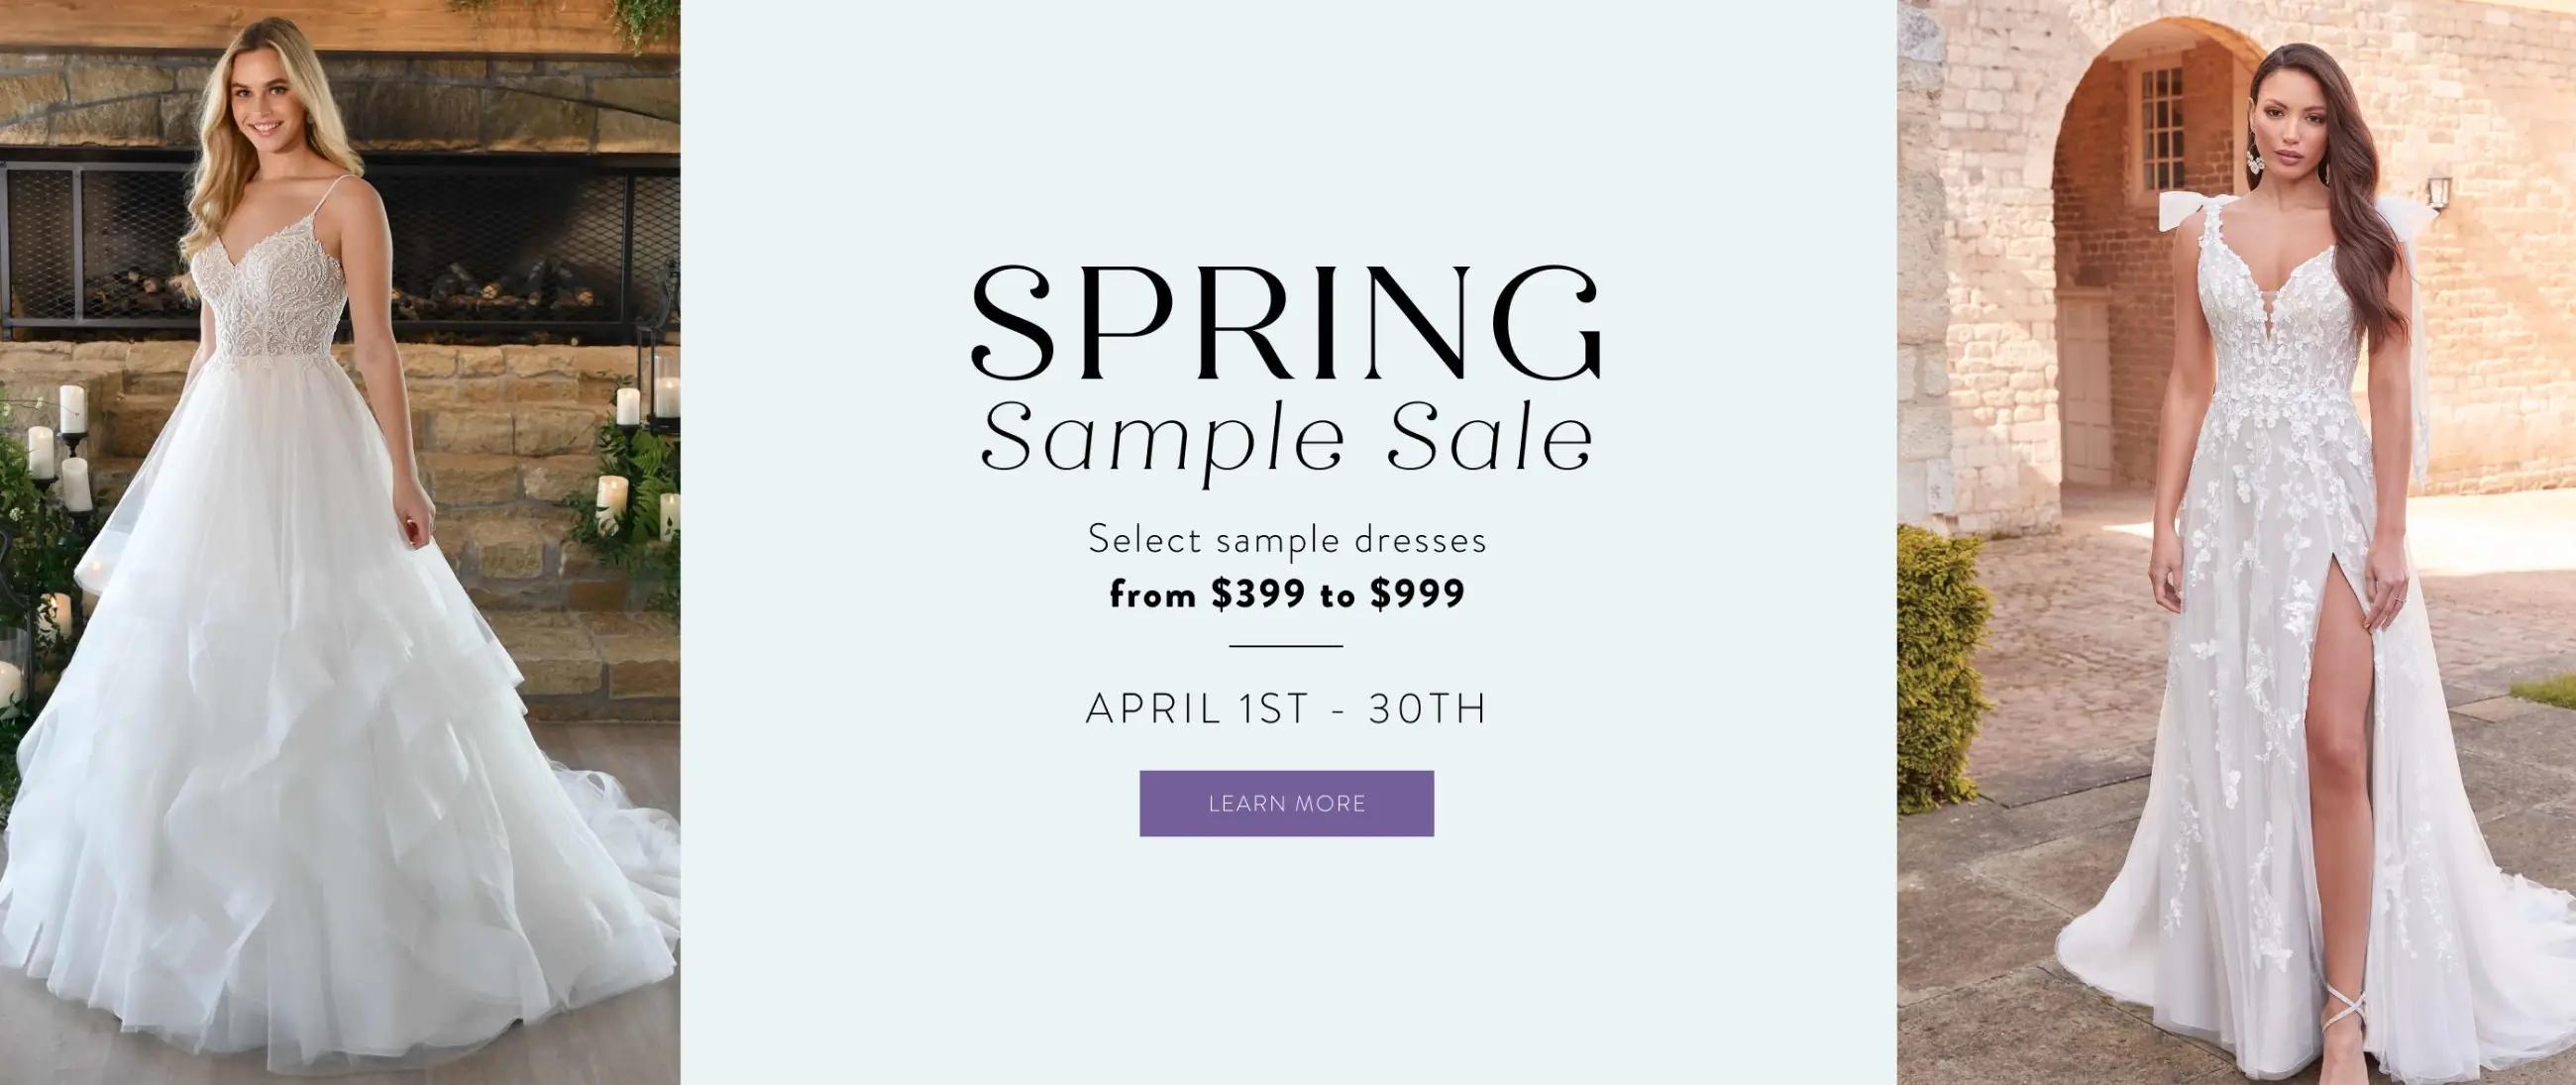 Spring Sample Sale banner desktop